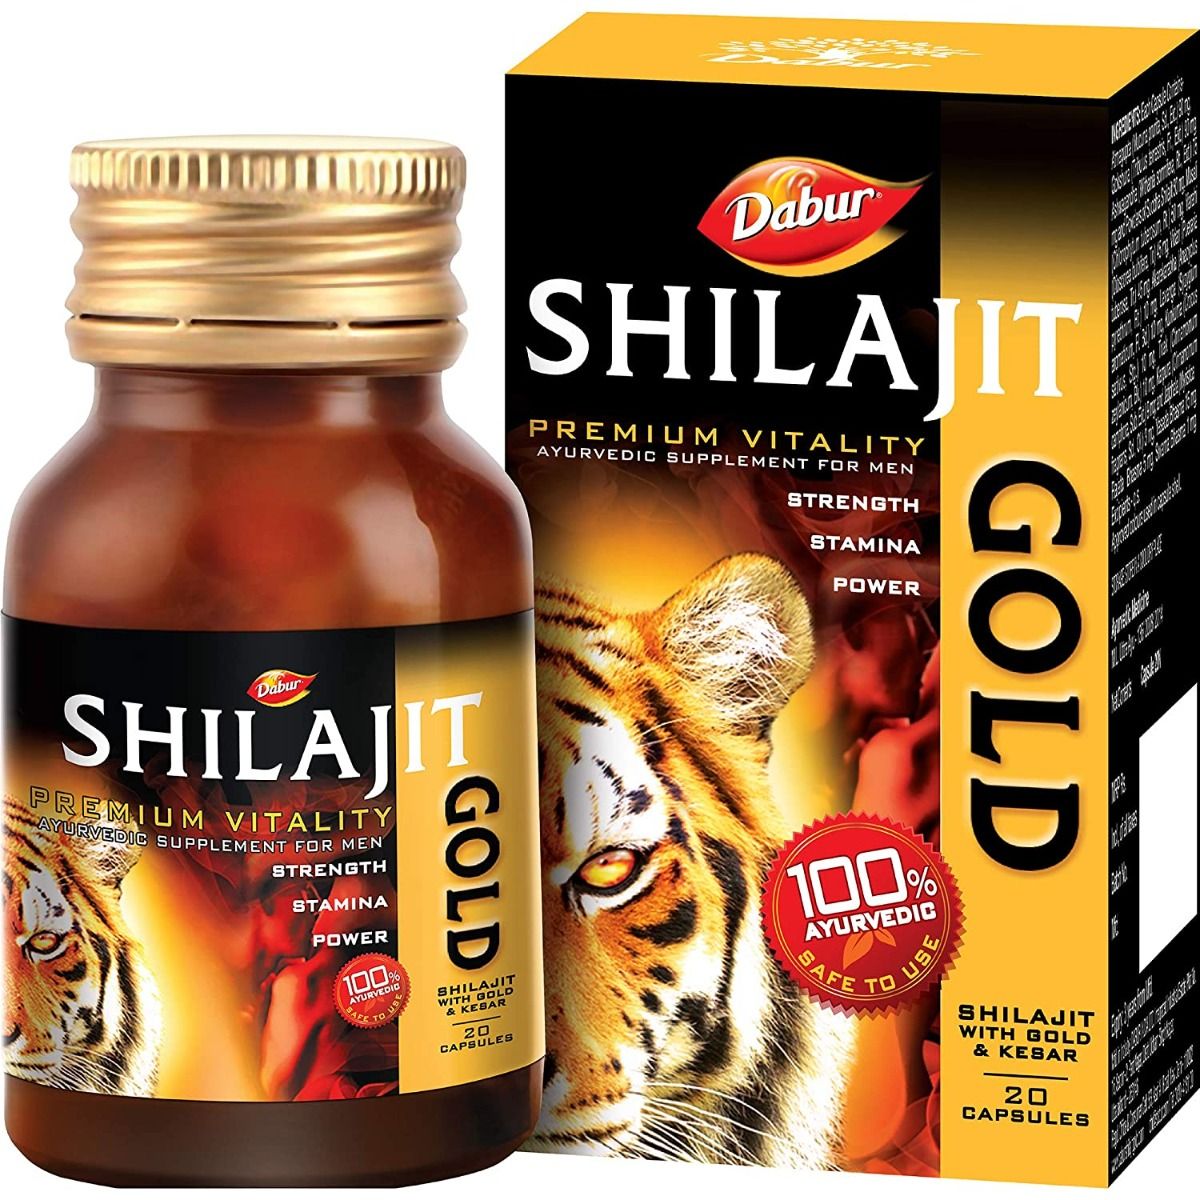 Buy Dabur Shilajit Gold, 20 Capsules Online